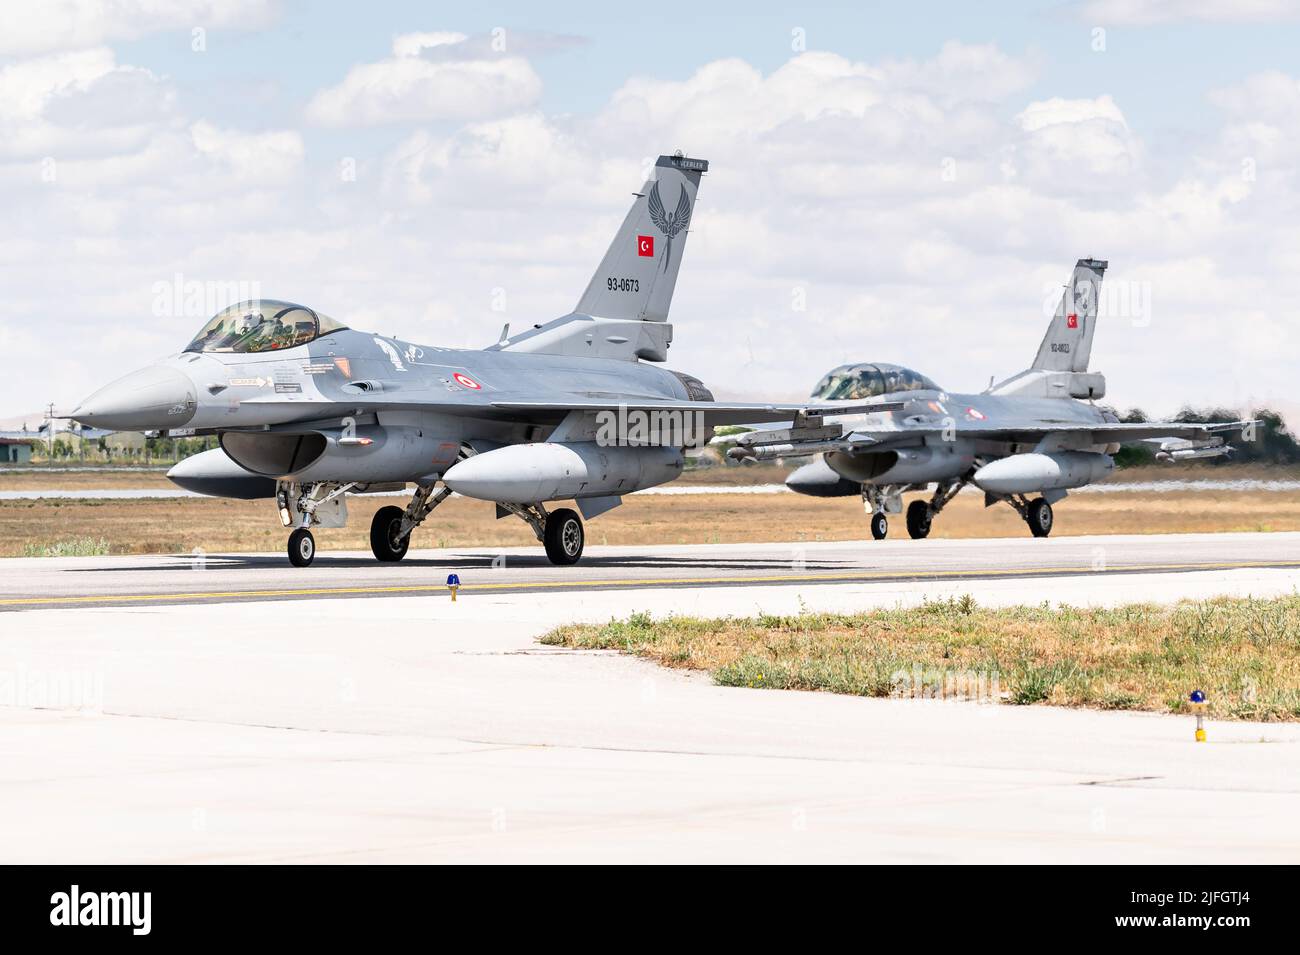 Un avion de chasse Faucon F-16 de l'armée de l'air turque à la base aérienne de Konya en Turquie. Banque D'Images